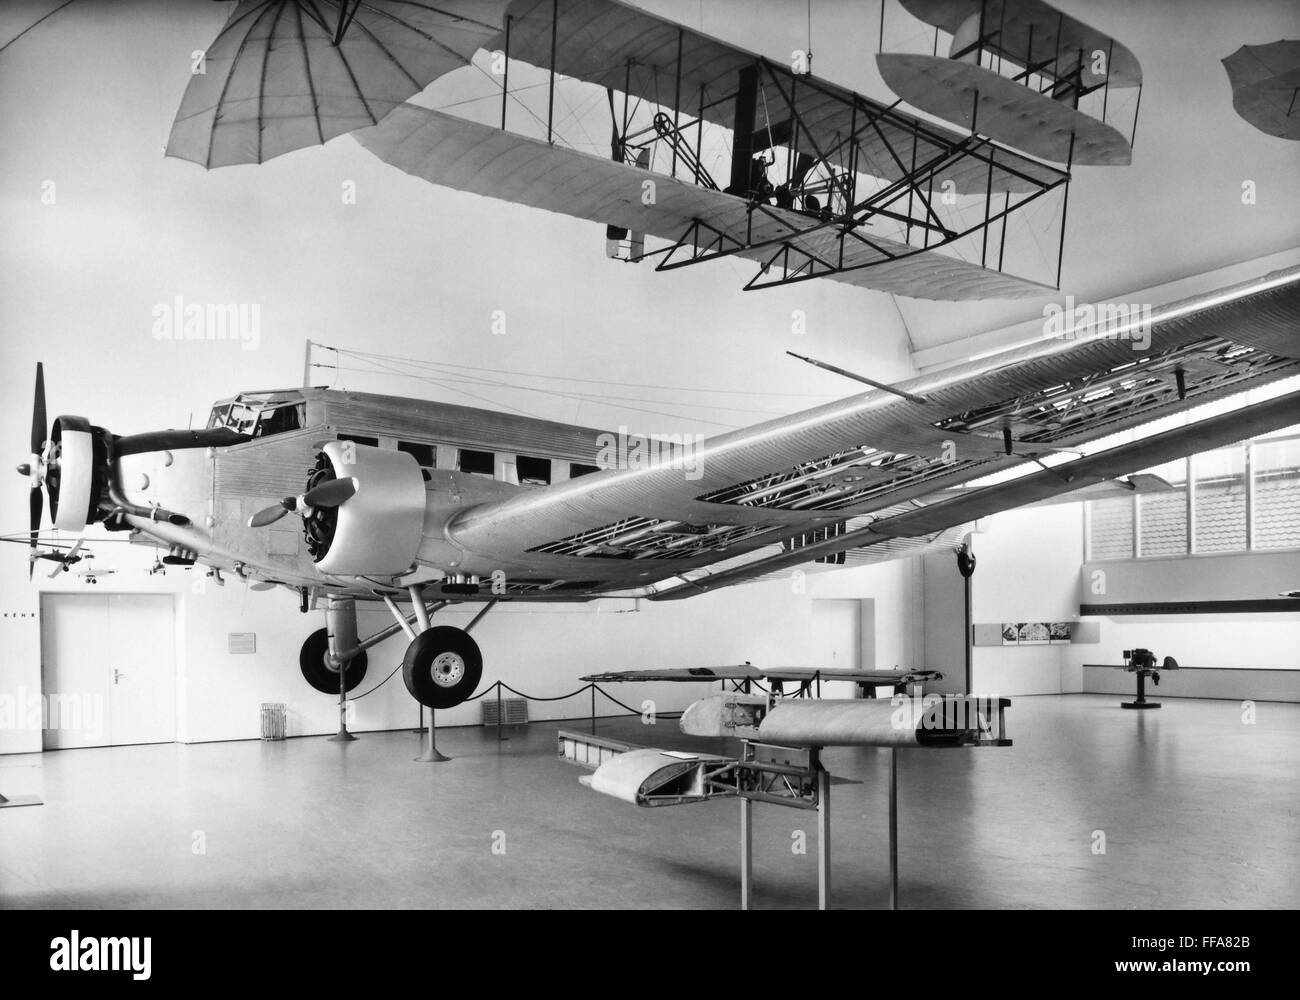 WRIGHT BRÜDER FLUGZEUG. / Keines der Zimmer im Deutschen Museum, München, Deutschland, gewidmet der Geschichte des Flugzeugs. Oben ist eine Nachbildung des das erste erfolgreiche Flugzeug der Gebrüder Wright. Stockfoto